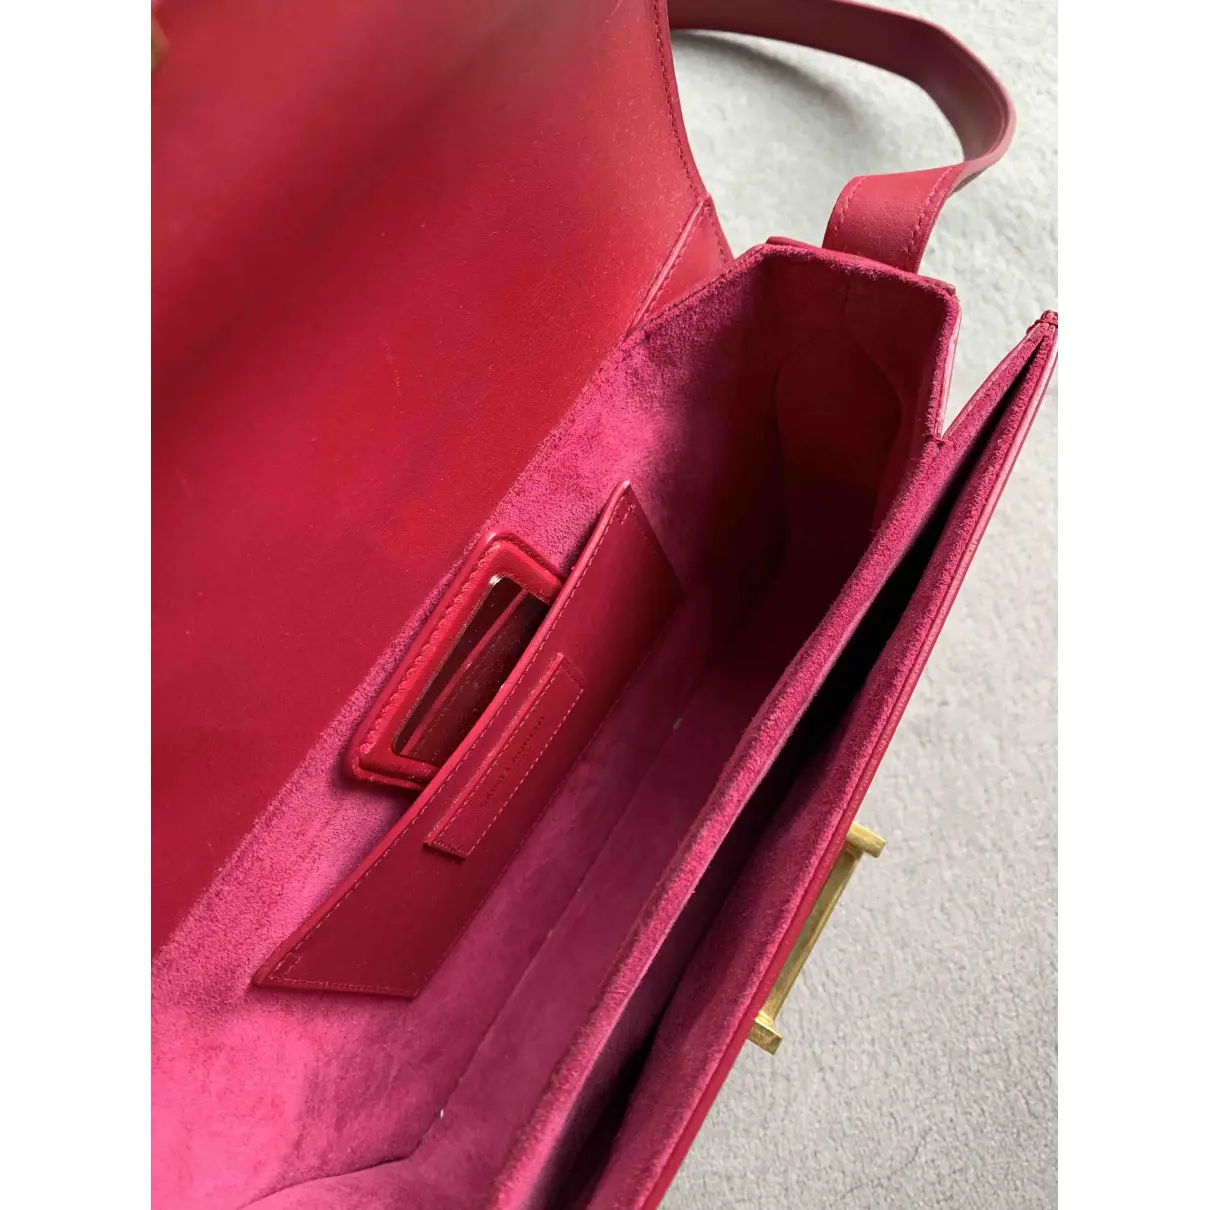 Lulu leather handbag Saint Laurent